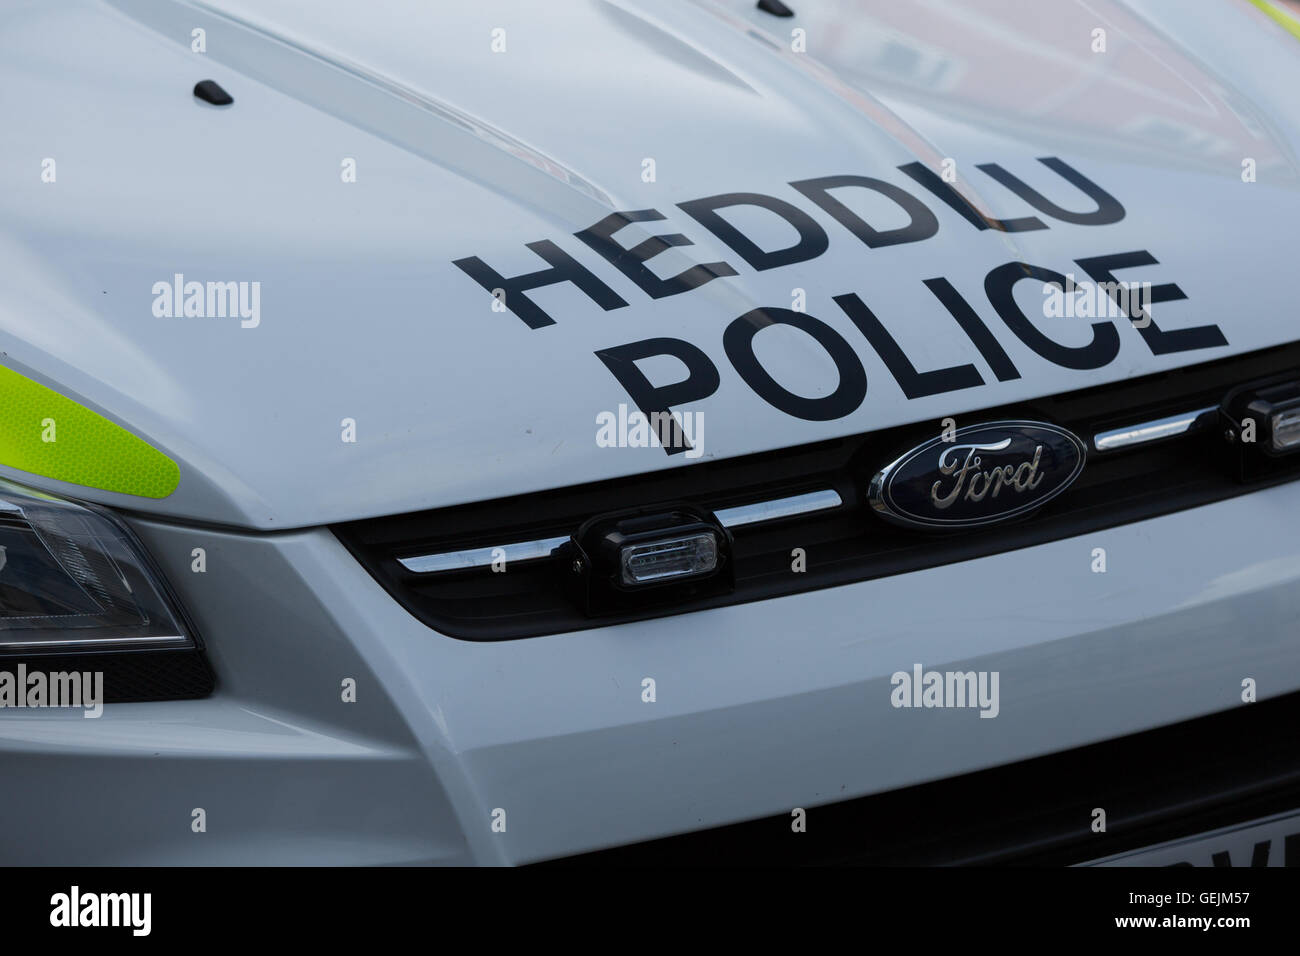 Vorderseite eines walisischen Polizeiautos mit der Polizei Worte auch in Waliser Sprache Stockfoto